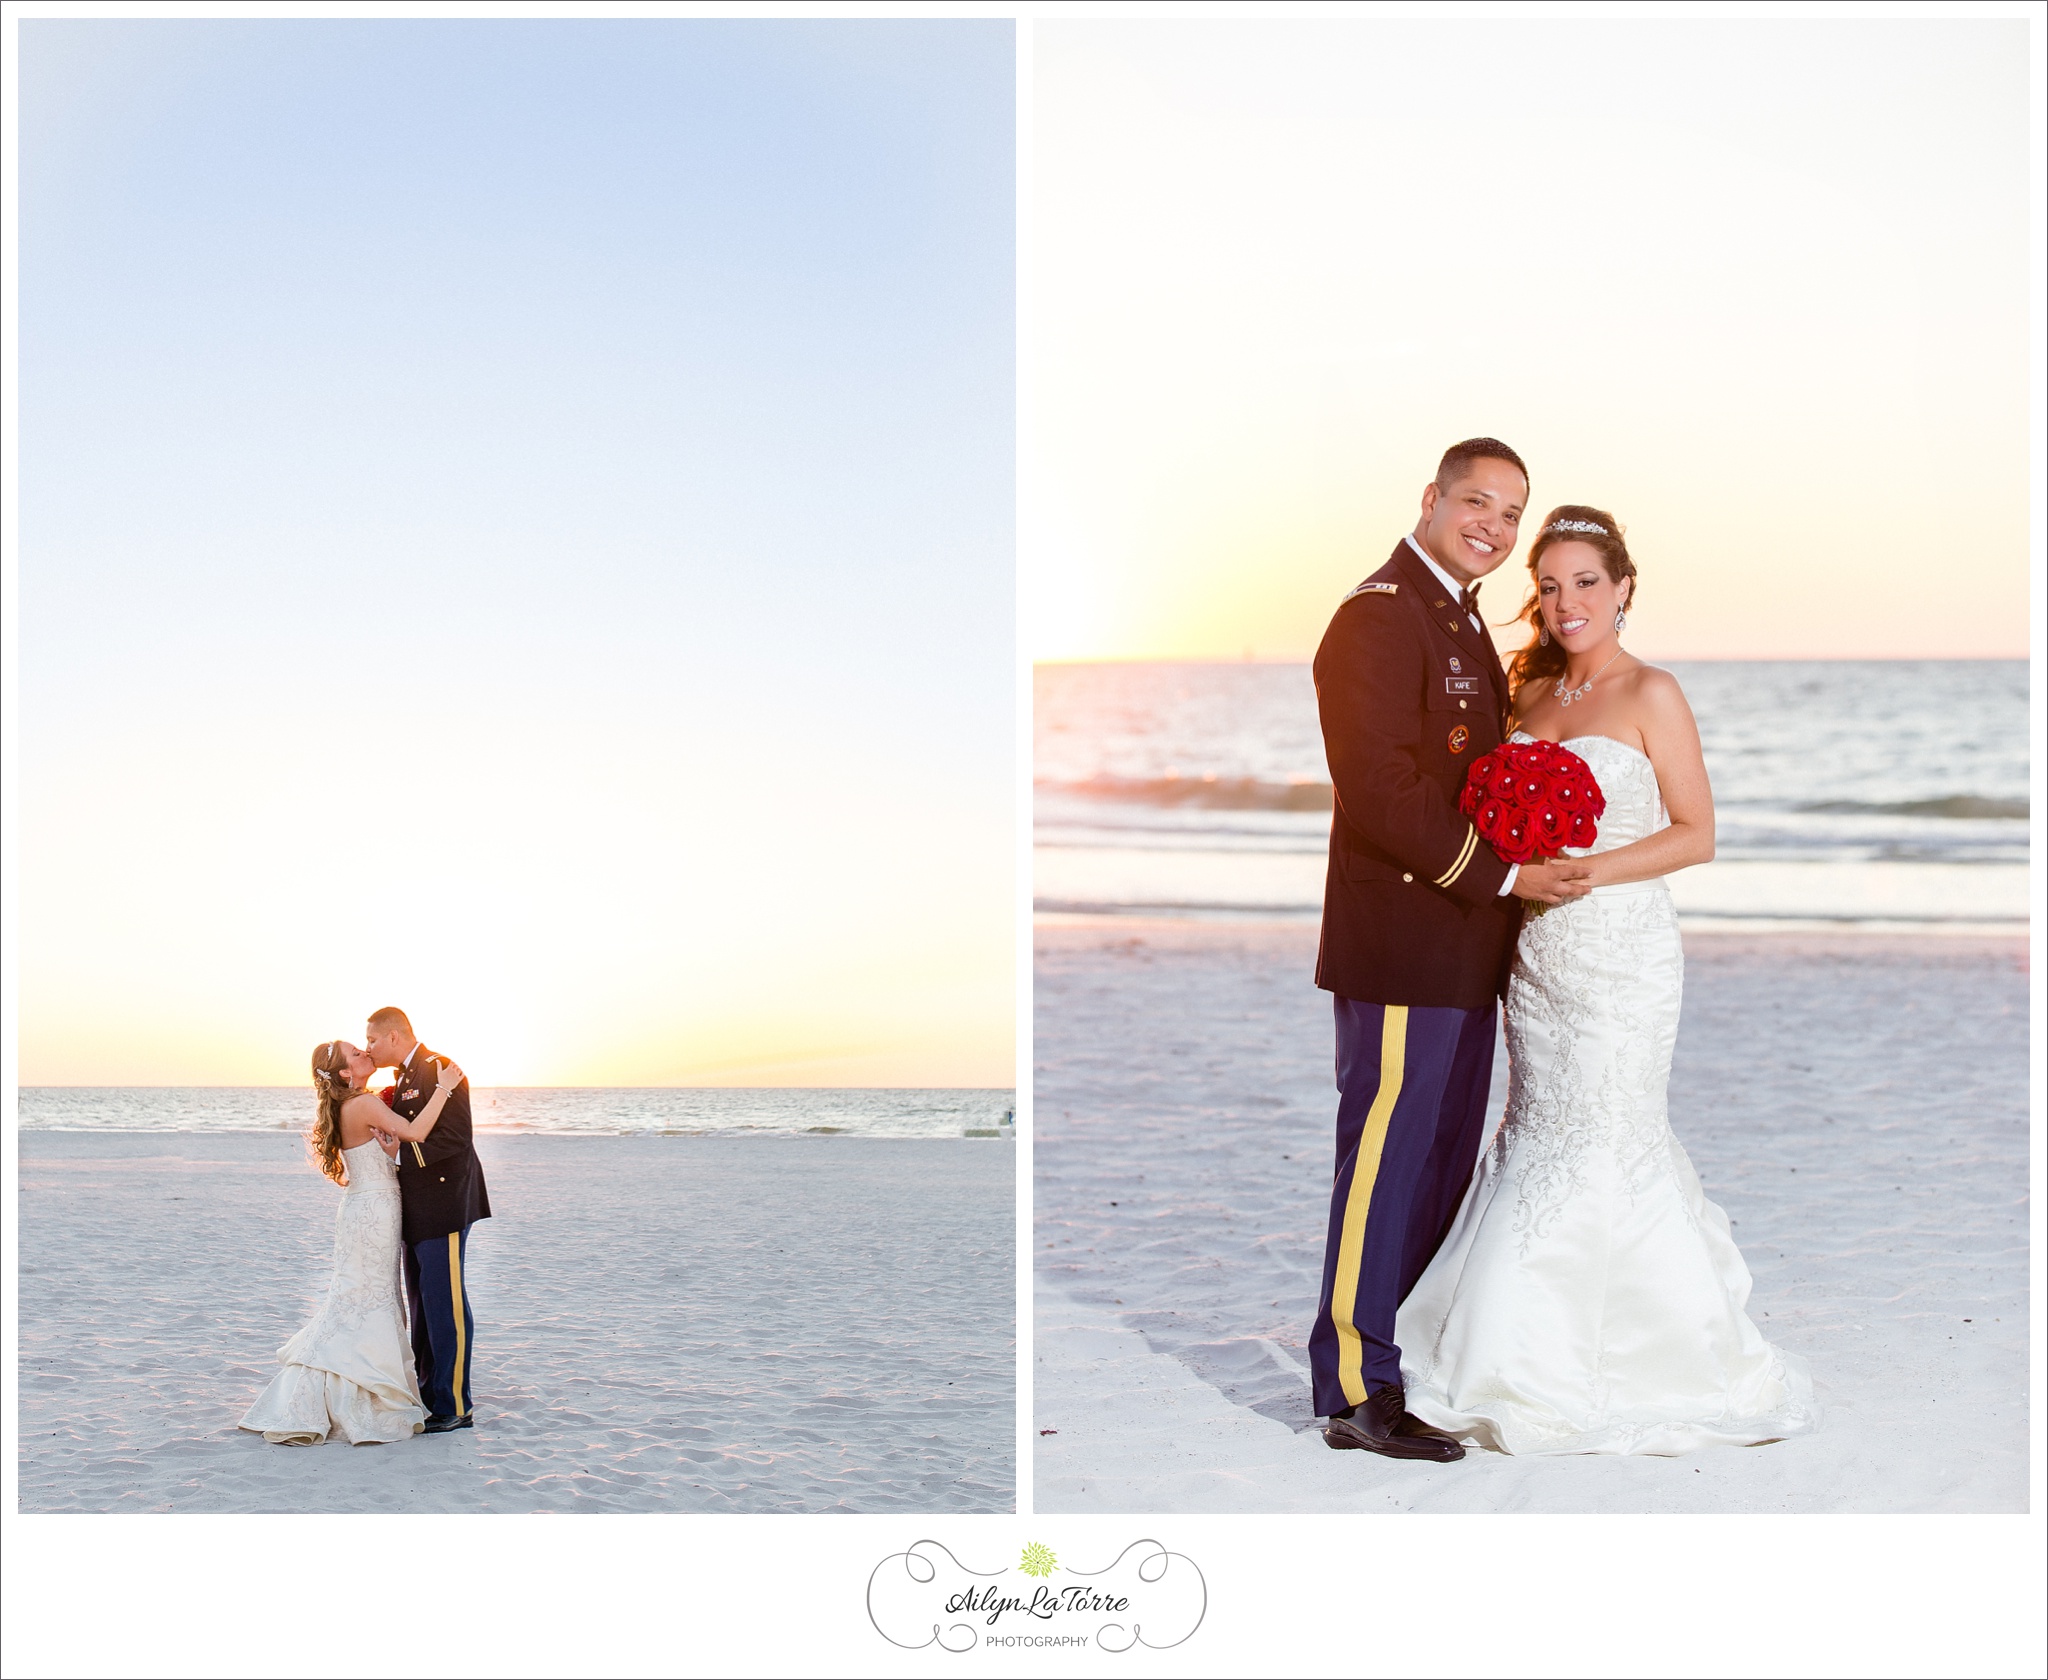 Hyatt Clearwater Beach Wedding |© Ailyn La Torre Photography 2014